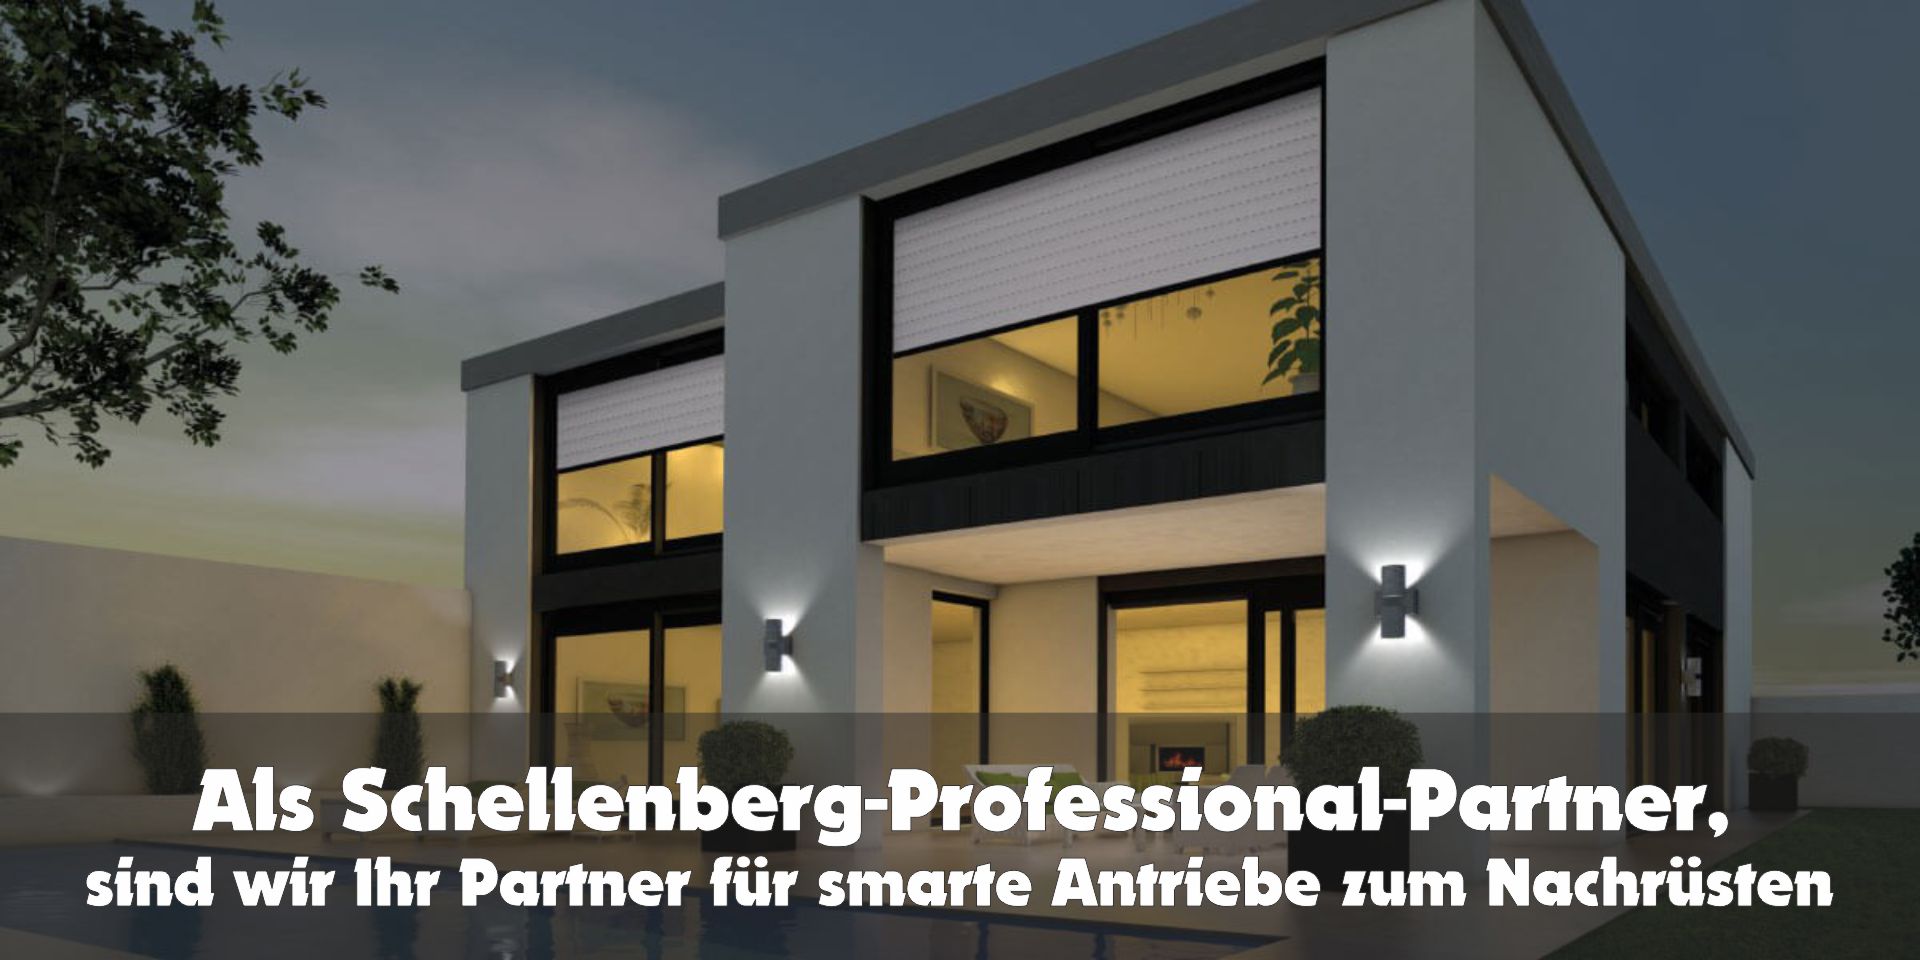 Schellenberg-Professional-Partner | www.fliegengittermacher.de